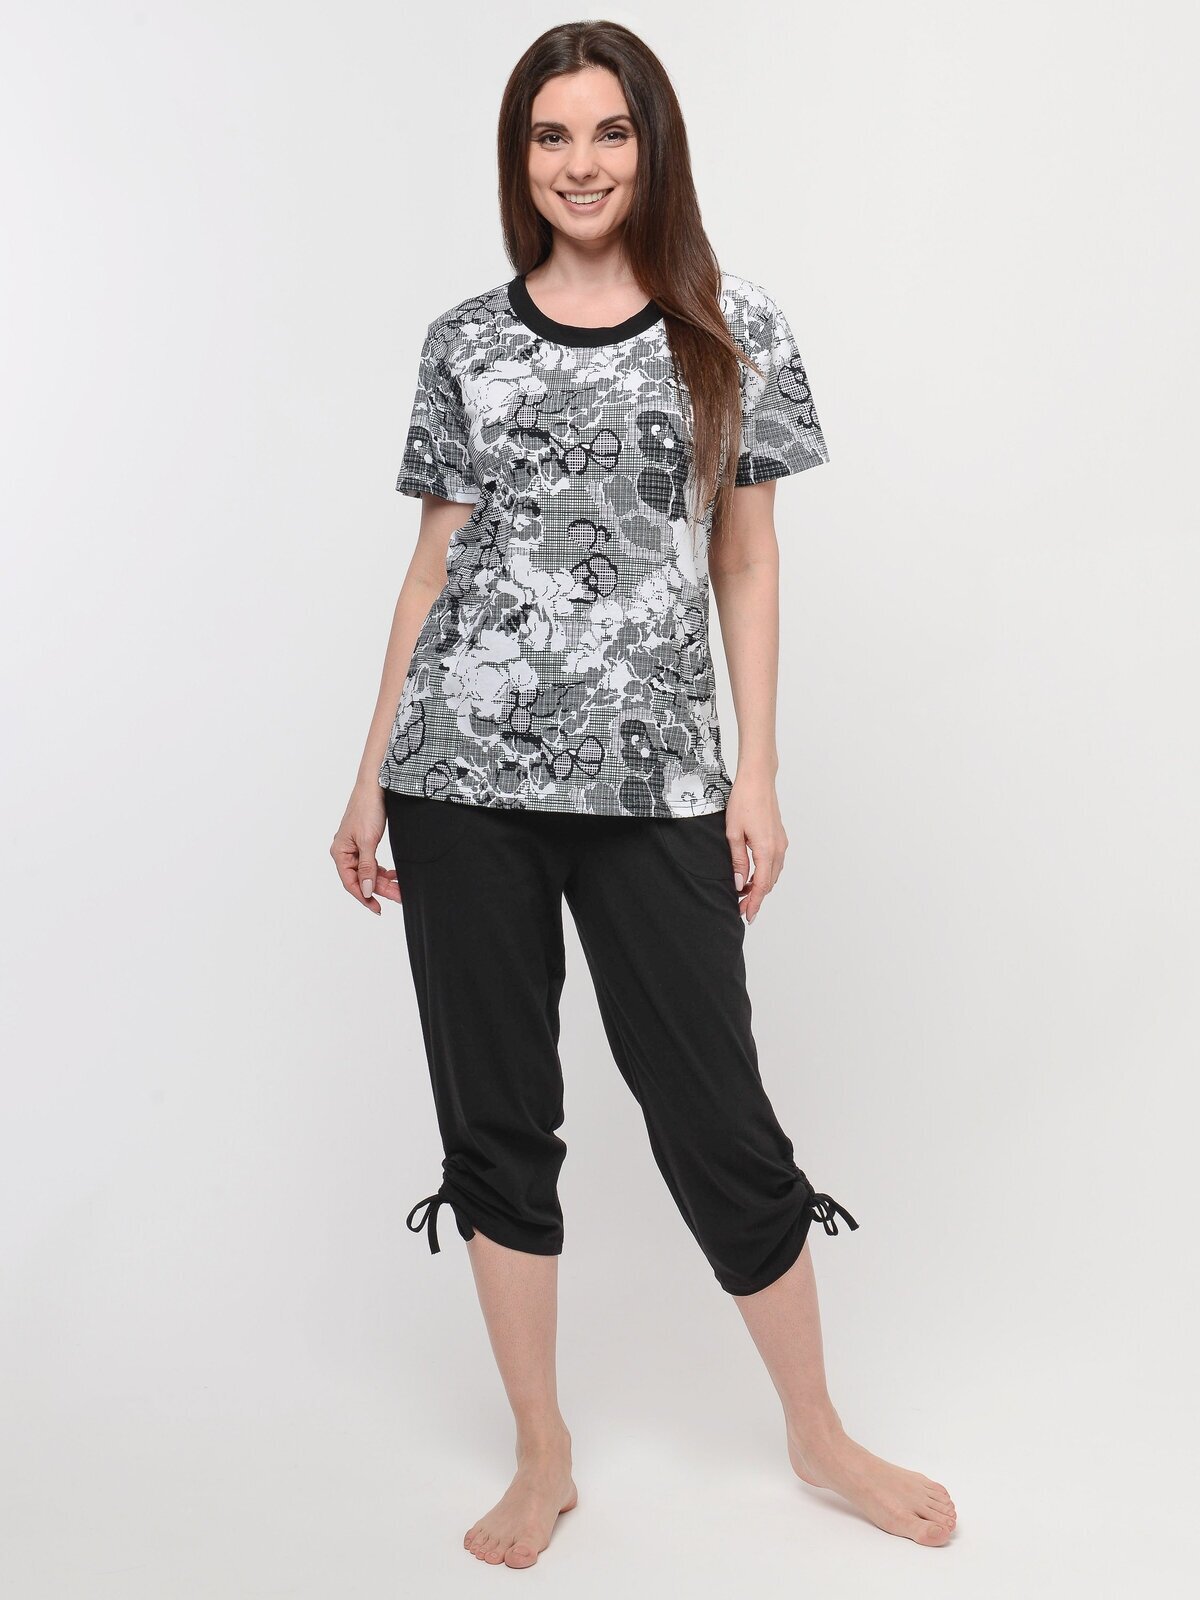 Пижама домашняя женская Алтекс футболка с бриджами черно-белая, размер 58 - фотография № 1